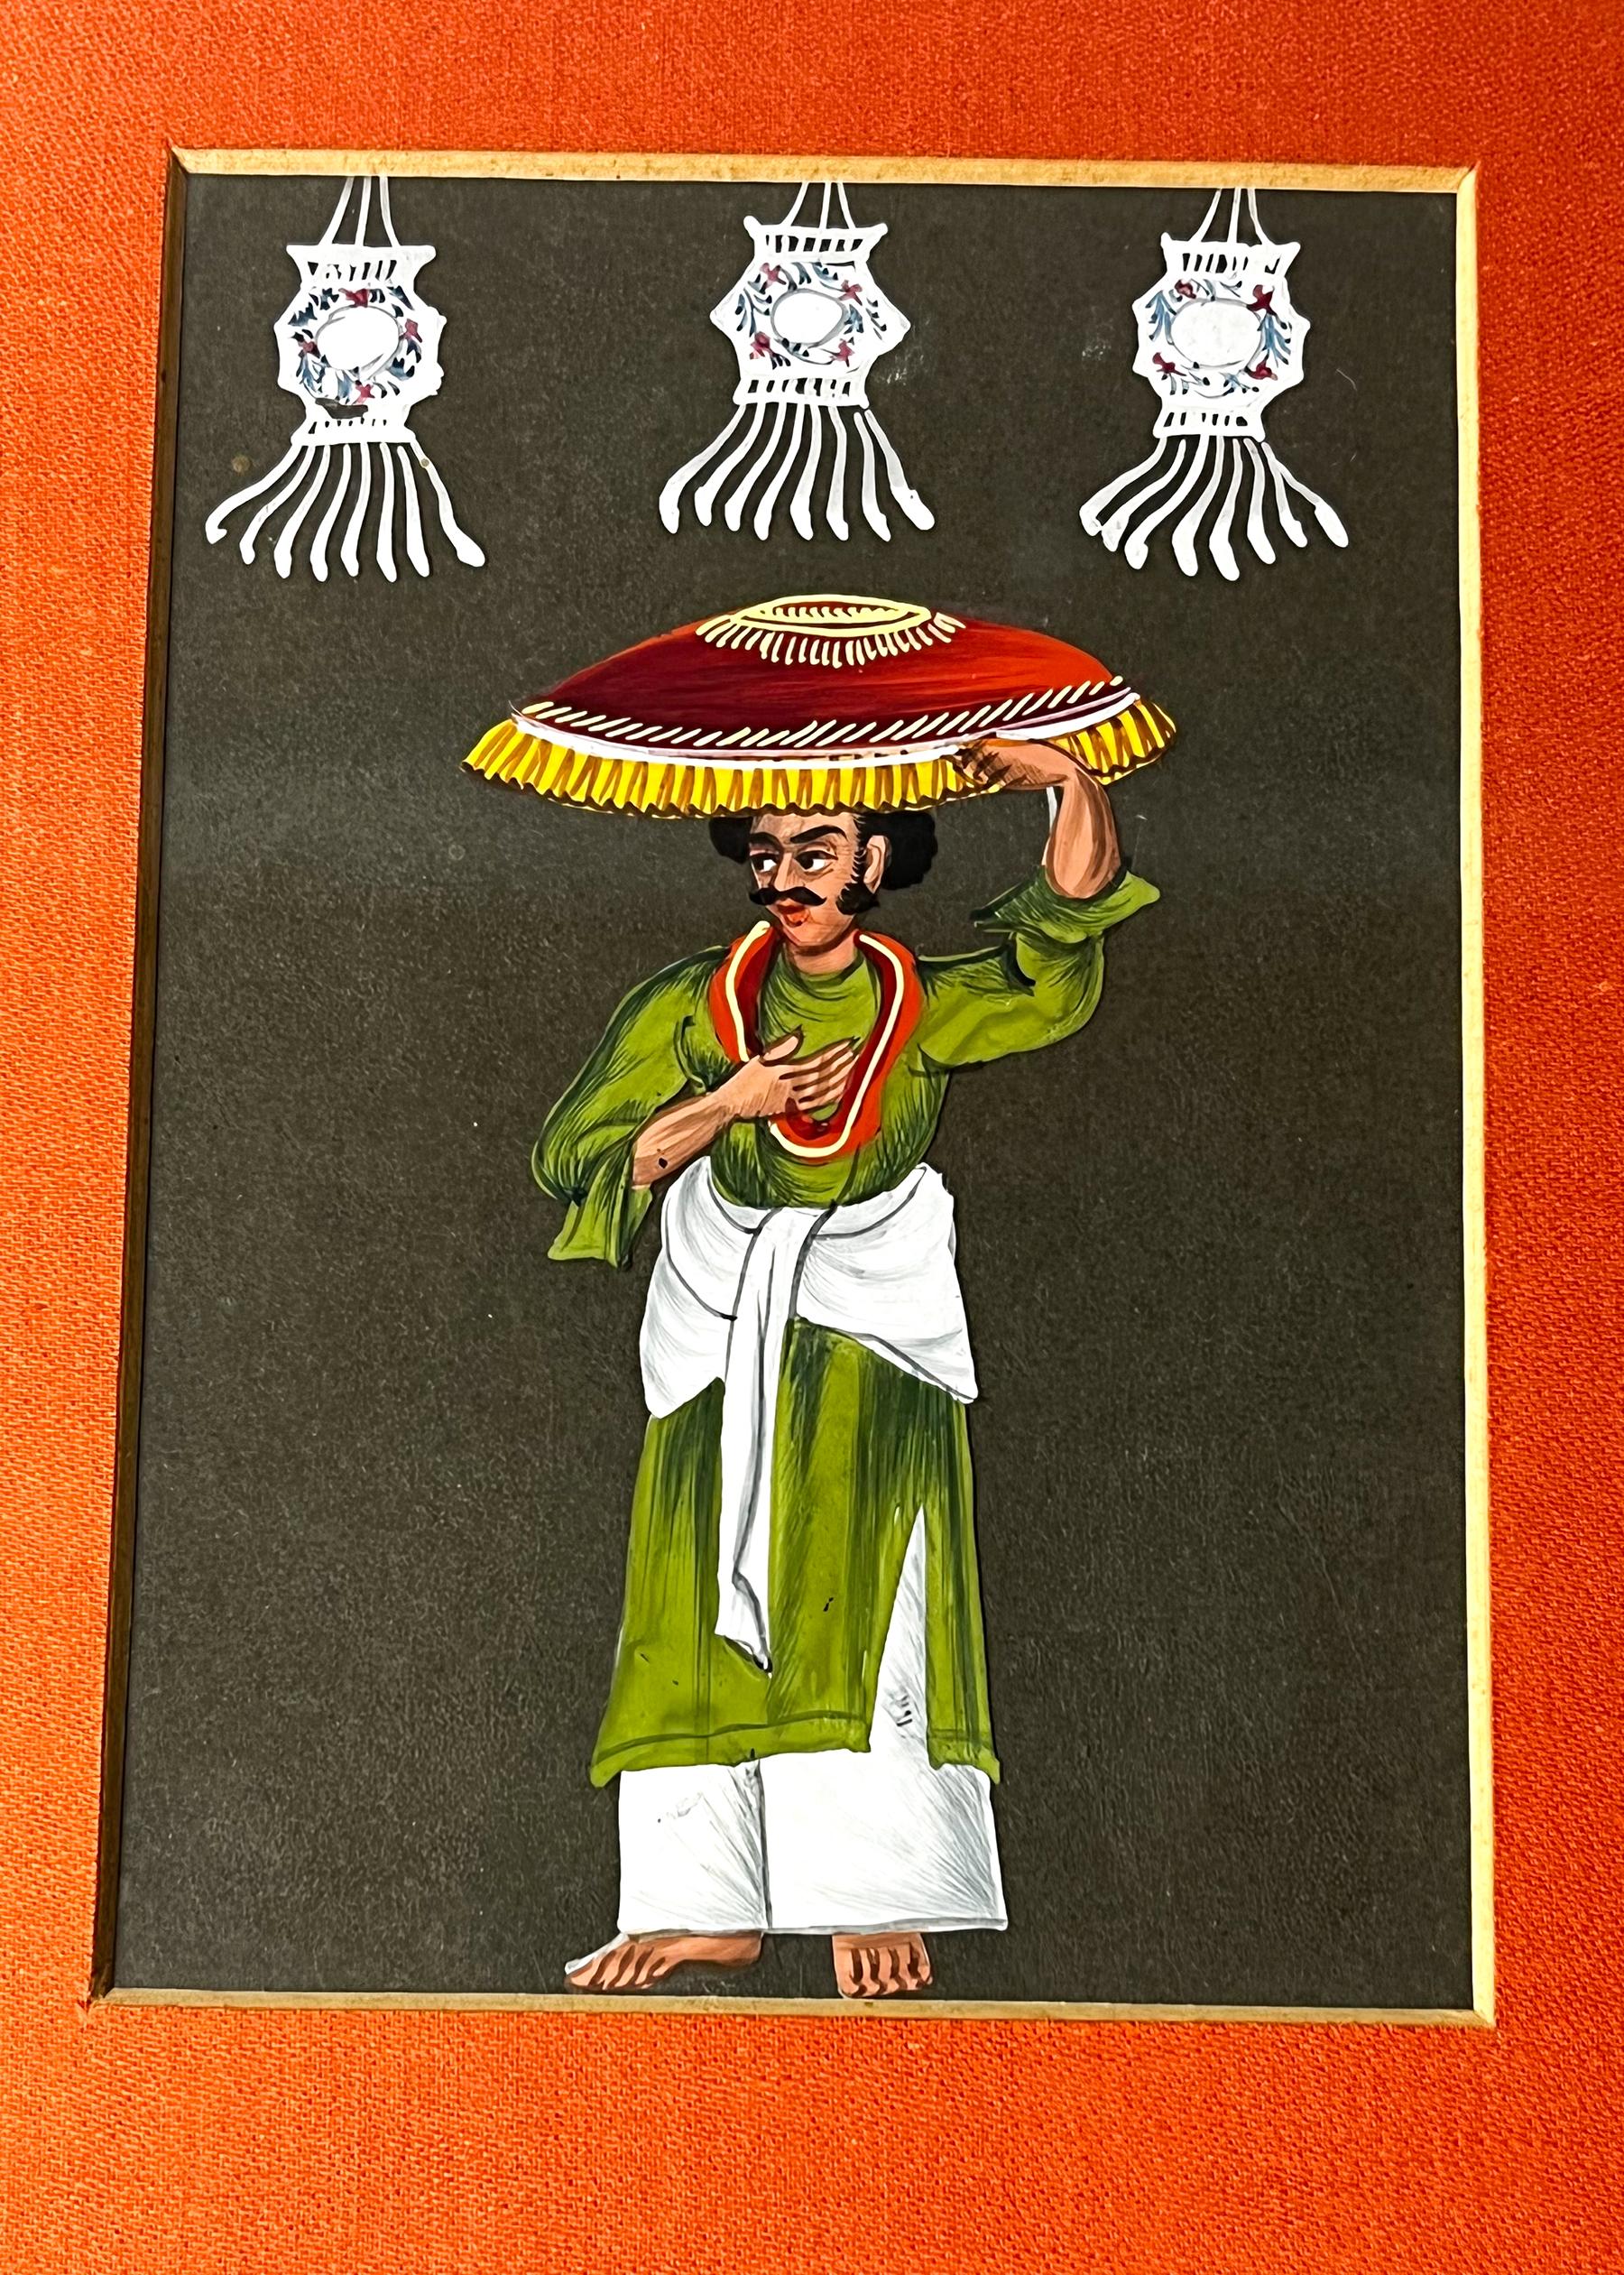 Paar antike indische Miniatur-Glimmerbilder des 19. Jahrhunderts C.1830
Indian Company School

Ein Paar indischer Gouache-Gemälde des 19. Jahrhunderts auf Glimmer.

Micas wurden als Souvenirs - die Postkarten ihrer Zeit - geschaffen, da sie den